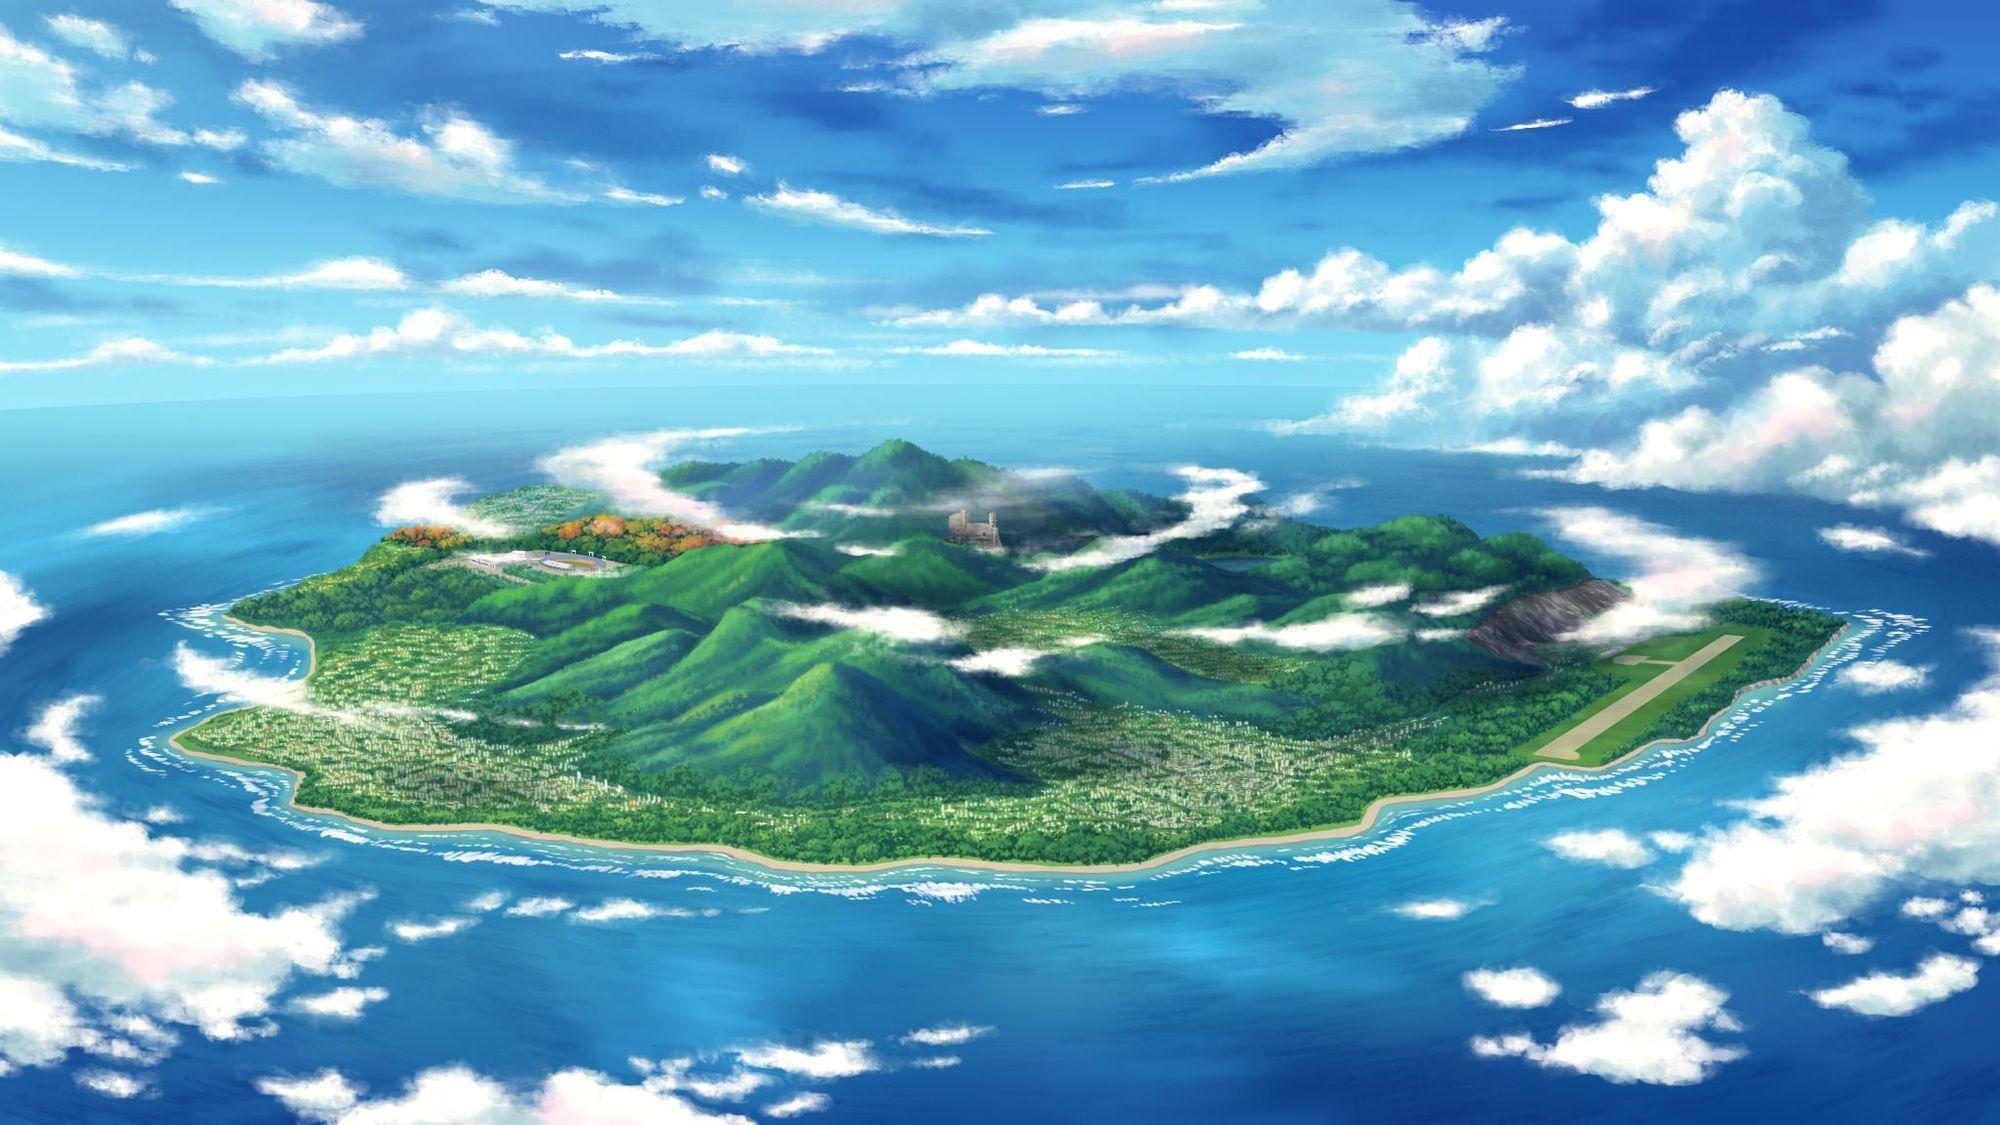 Những hình nền Anime đảo tuyệt đẹp, đưa bạn đến một thế giới hoàn toàn mới với những hình ảnh sinh động, tươi sáng và đầy năng lượng. Hãy cùng khám phá các anime đảo nổi tiếng trên toàn thế giới nhé!